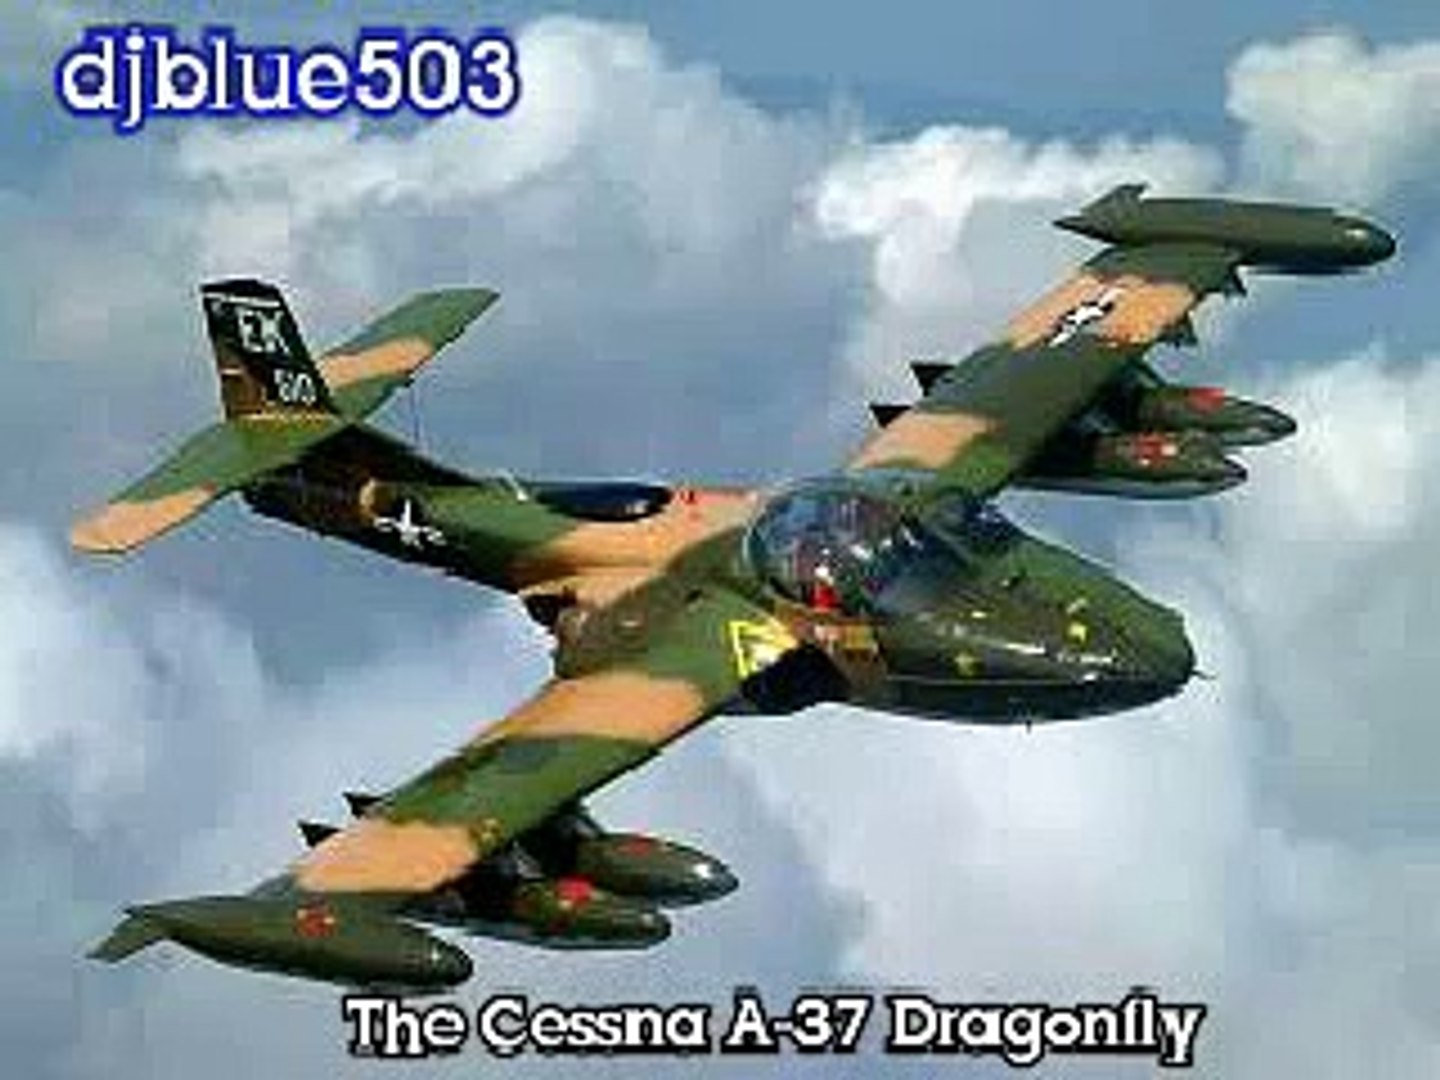 FUERZA ARMADA SALVADOREÑA, ADQUIERE 10 AVIONES DRAGONFLY A-37